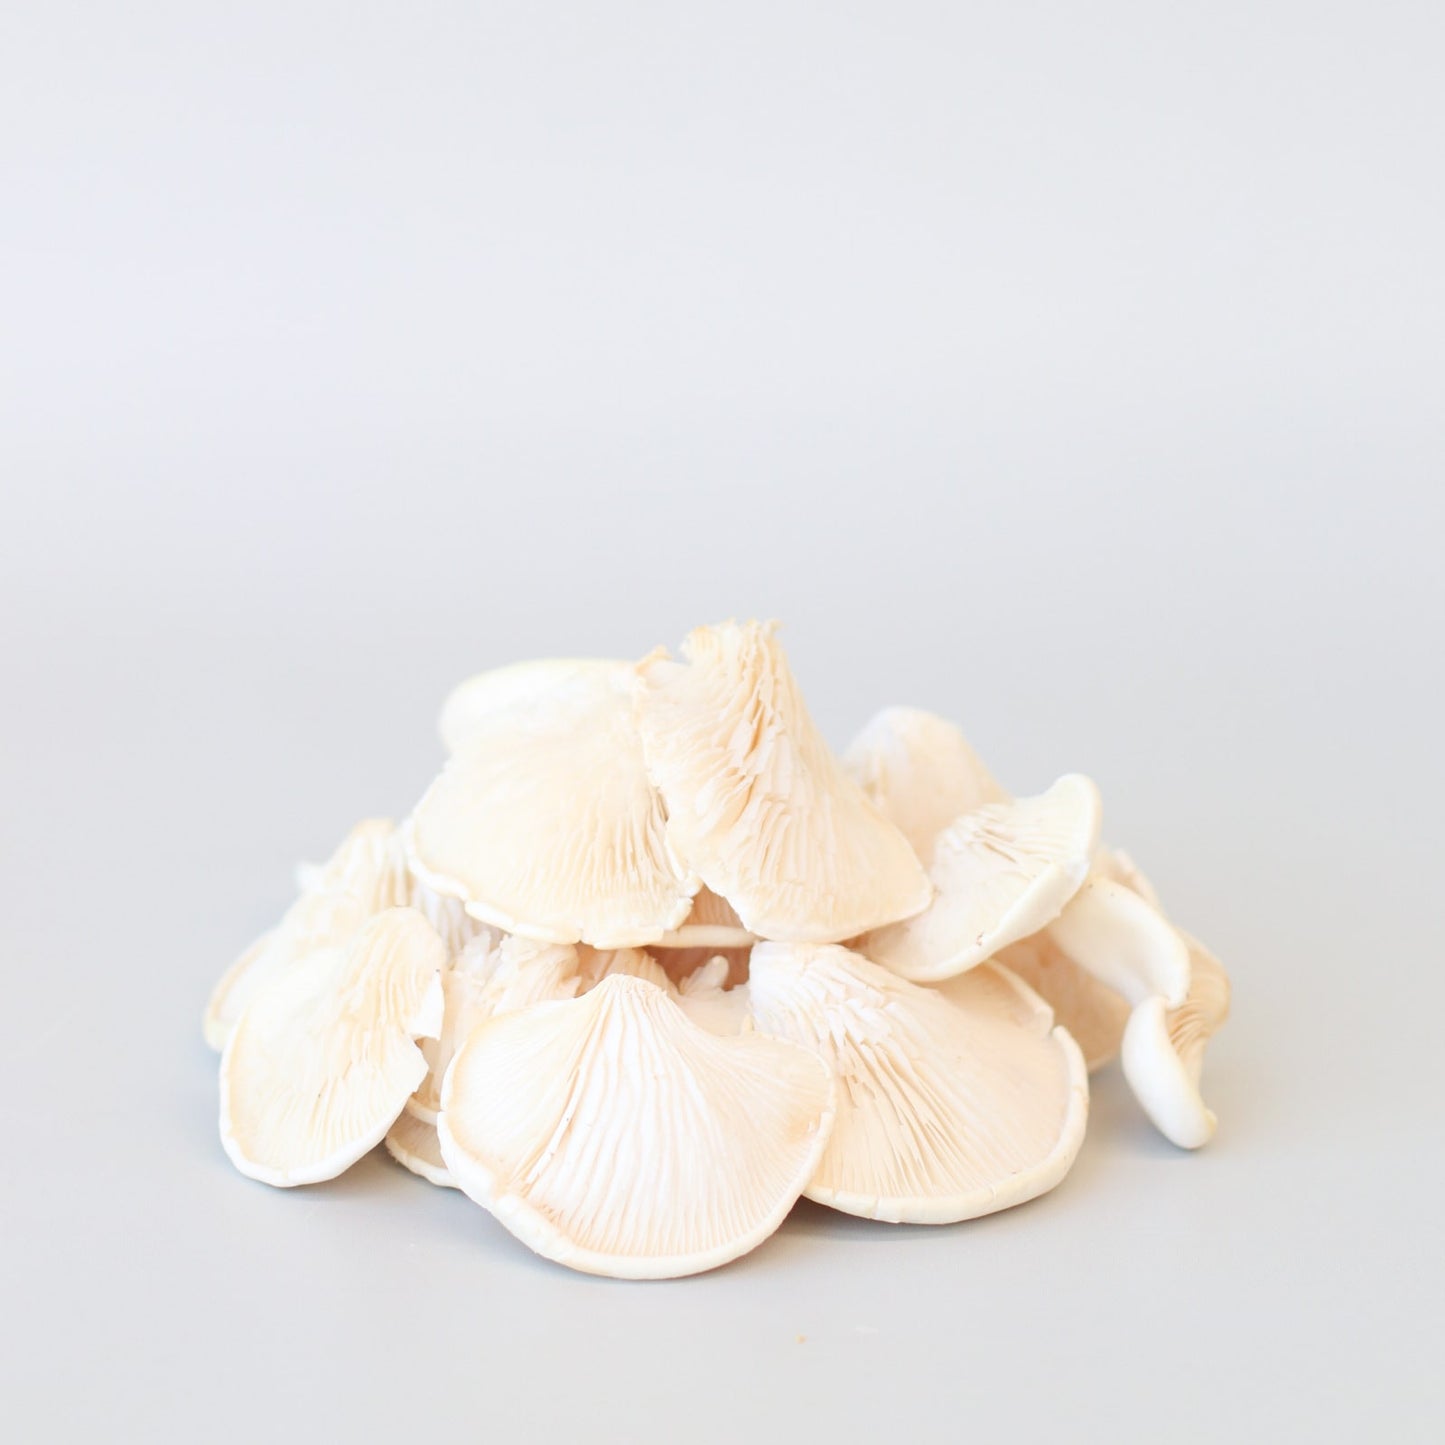 Mushrooms Oyster 200g